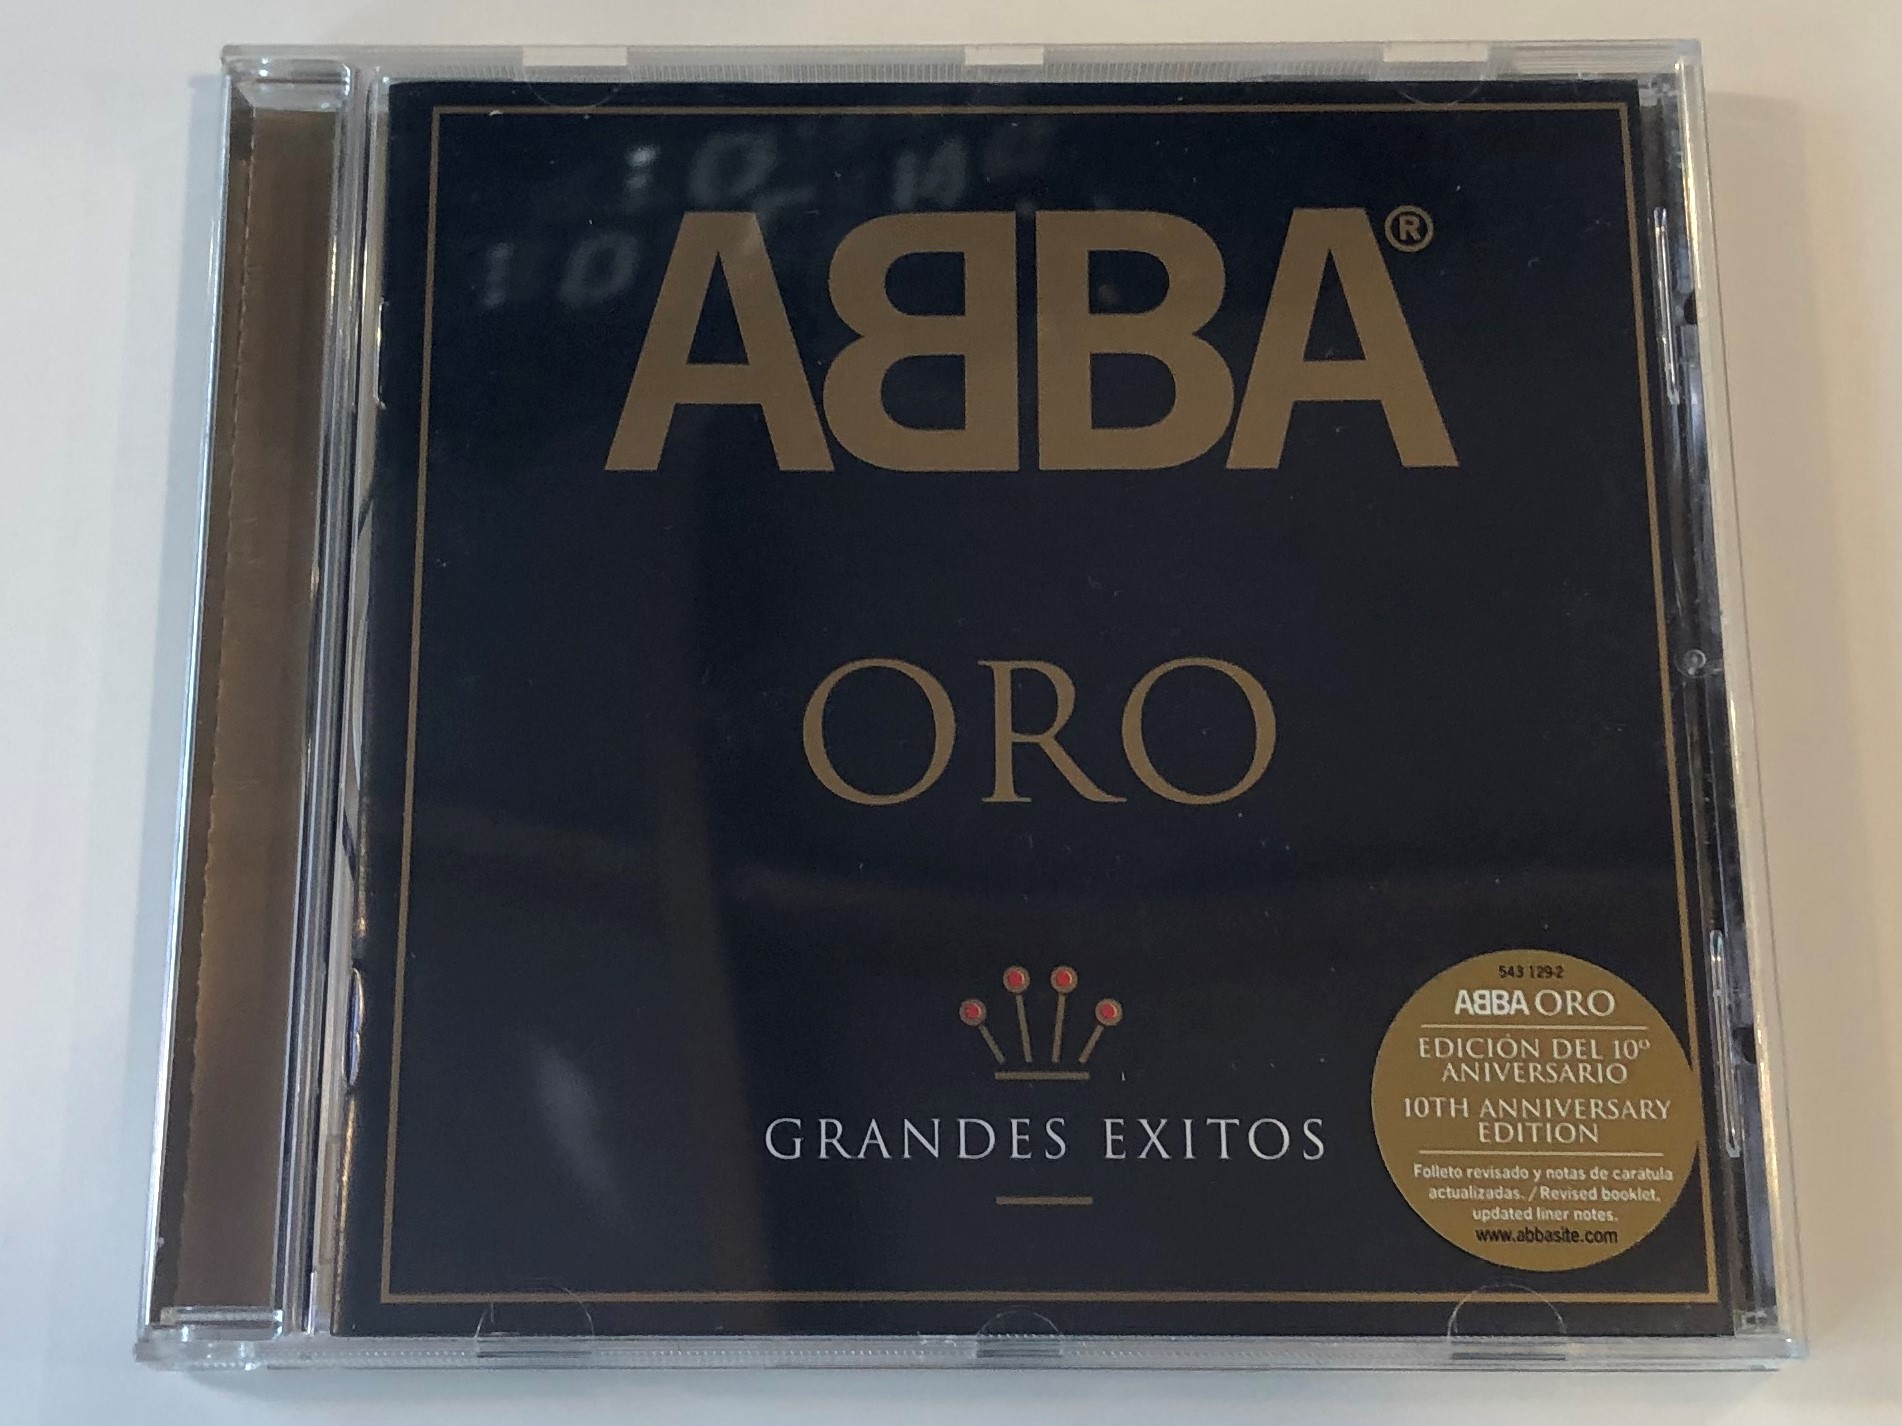 abba-oro-grandes-exitos-polar-audio-cd-1999-543-129-2-1-.jpg